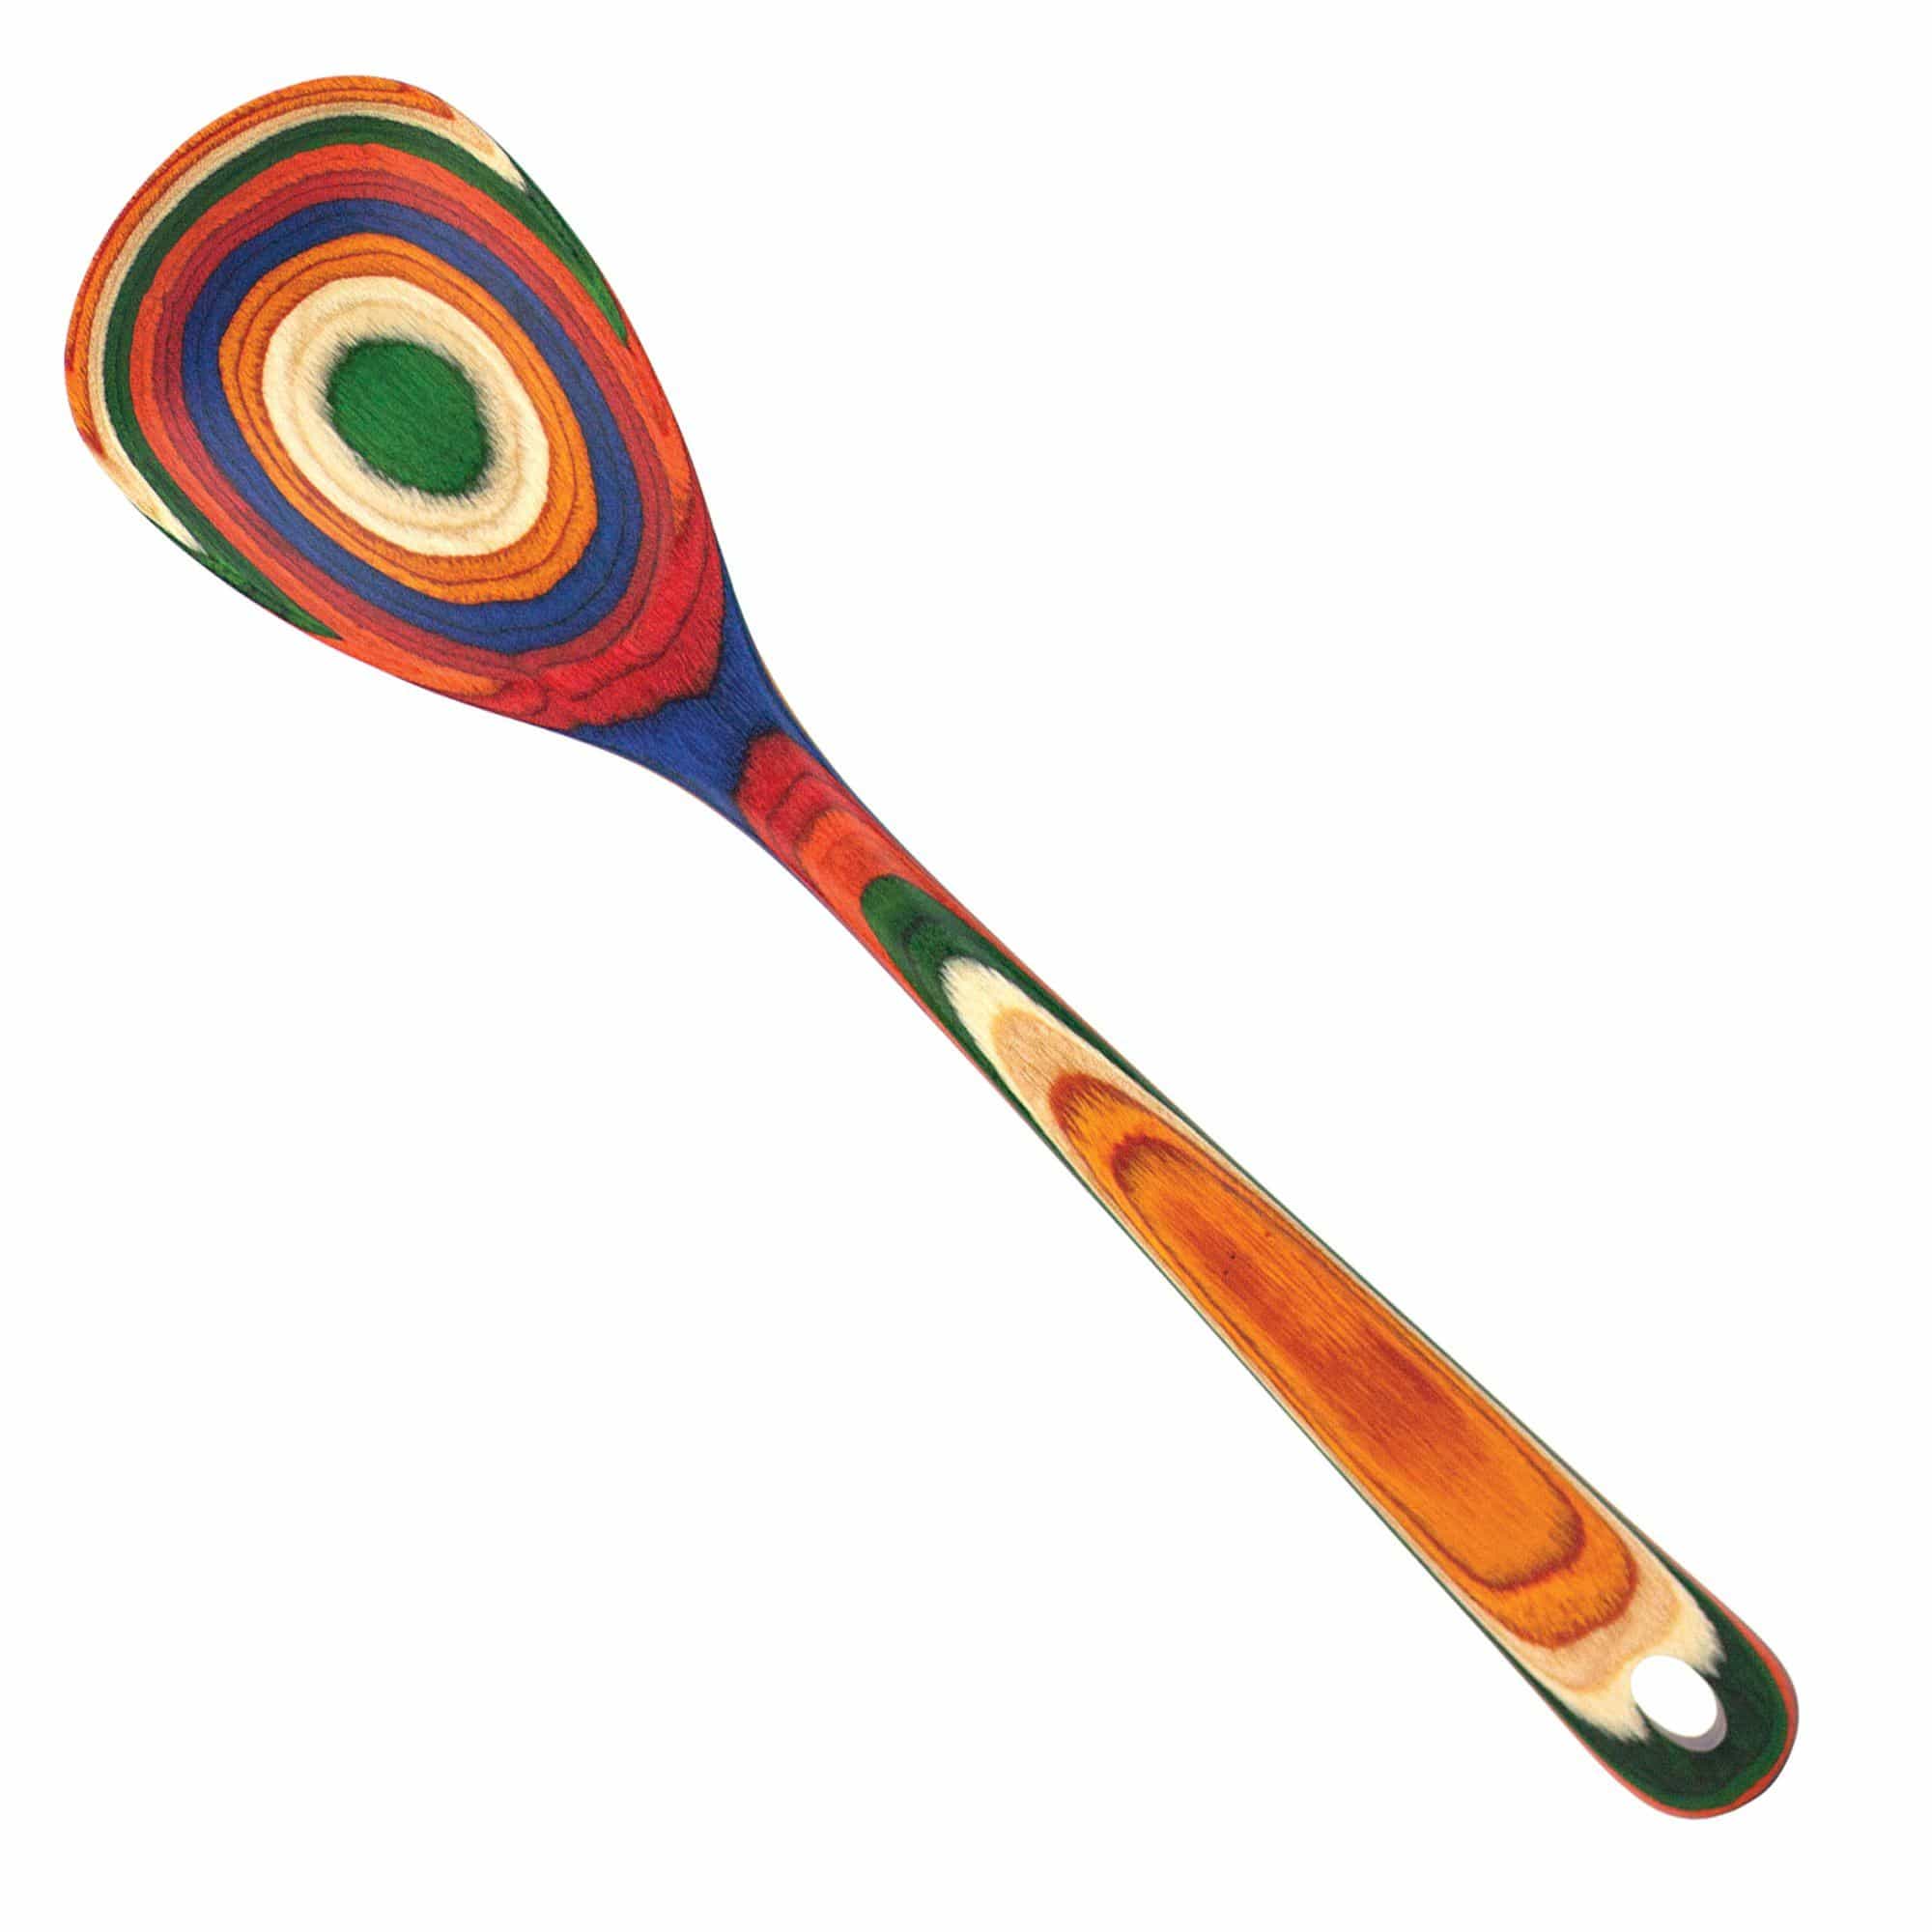 https://totallybamboo.com/cdn/shop/products/baltiquer-marrakesh-collection-mixing-spoon-totally-bamboo-852187.jpg?v=1622828971